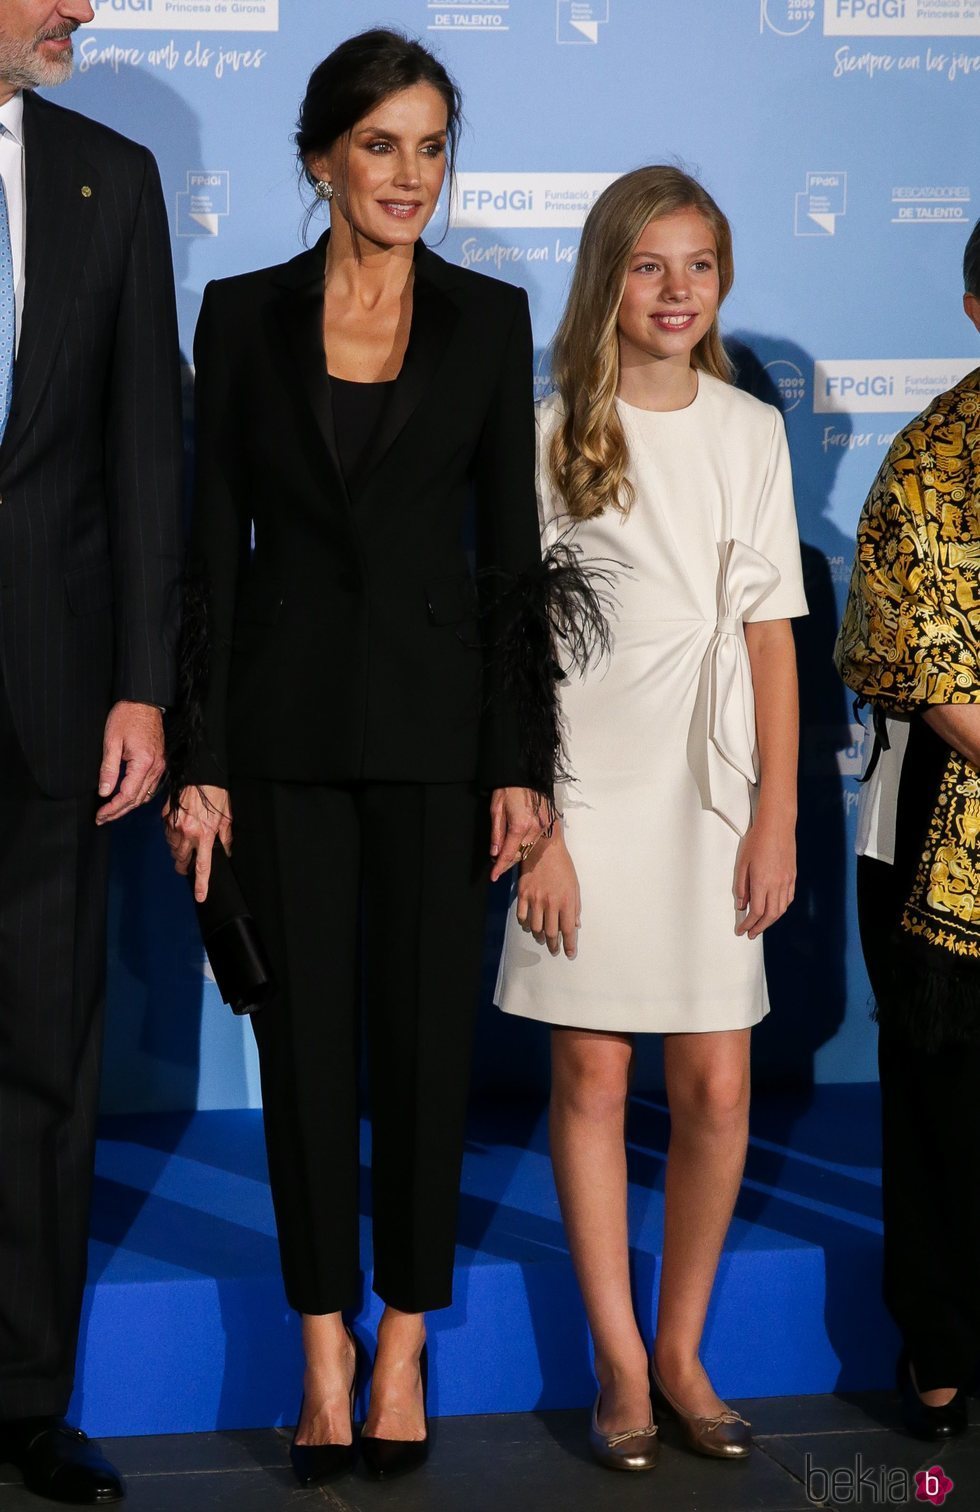 La Reina Letizia y la Infanta Sofía en los Premios Princesa de Girona 2019